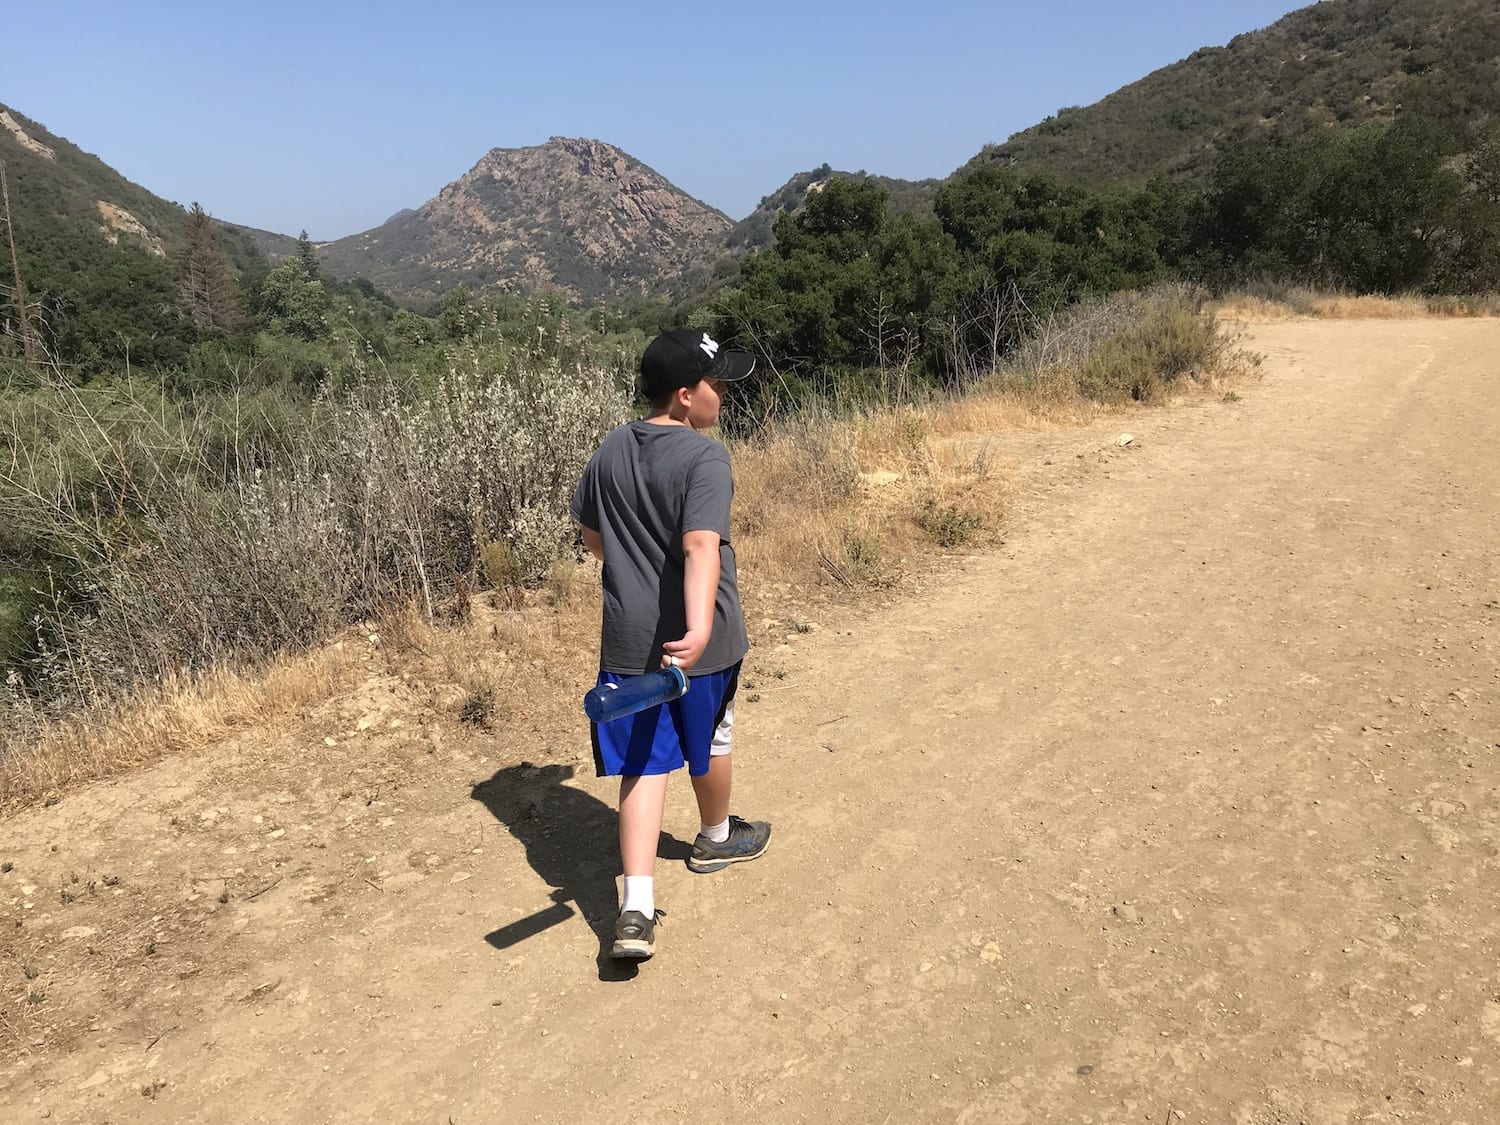 Luke Hiking at Malibu Creek State Park